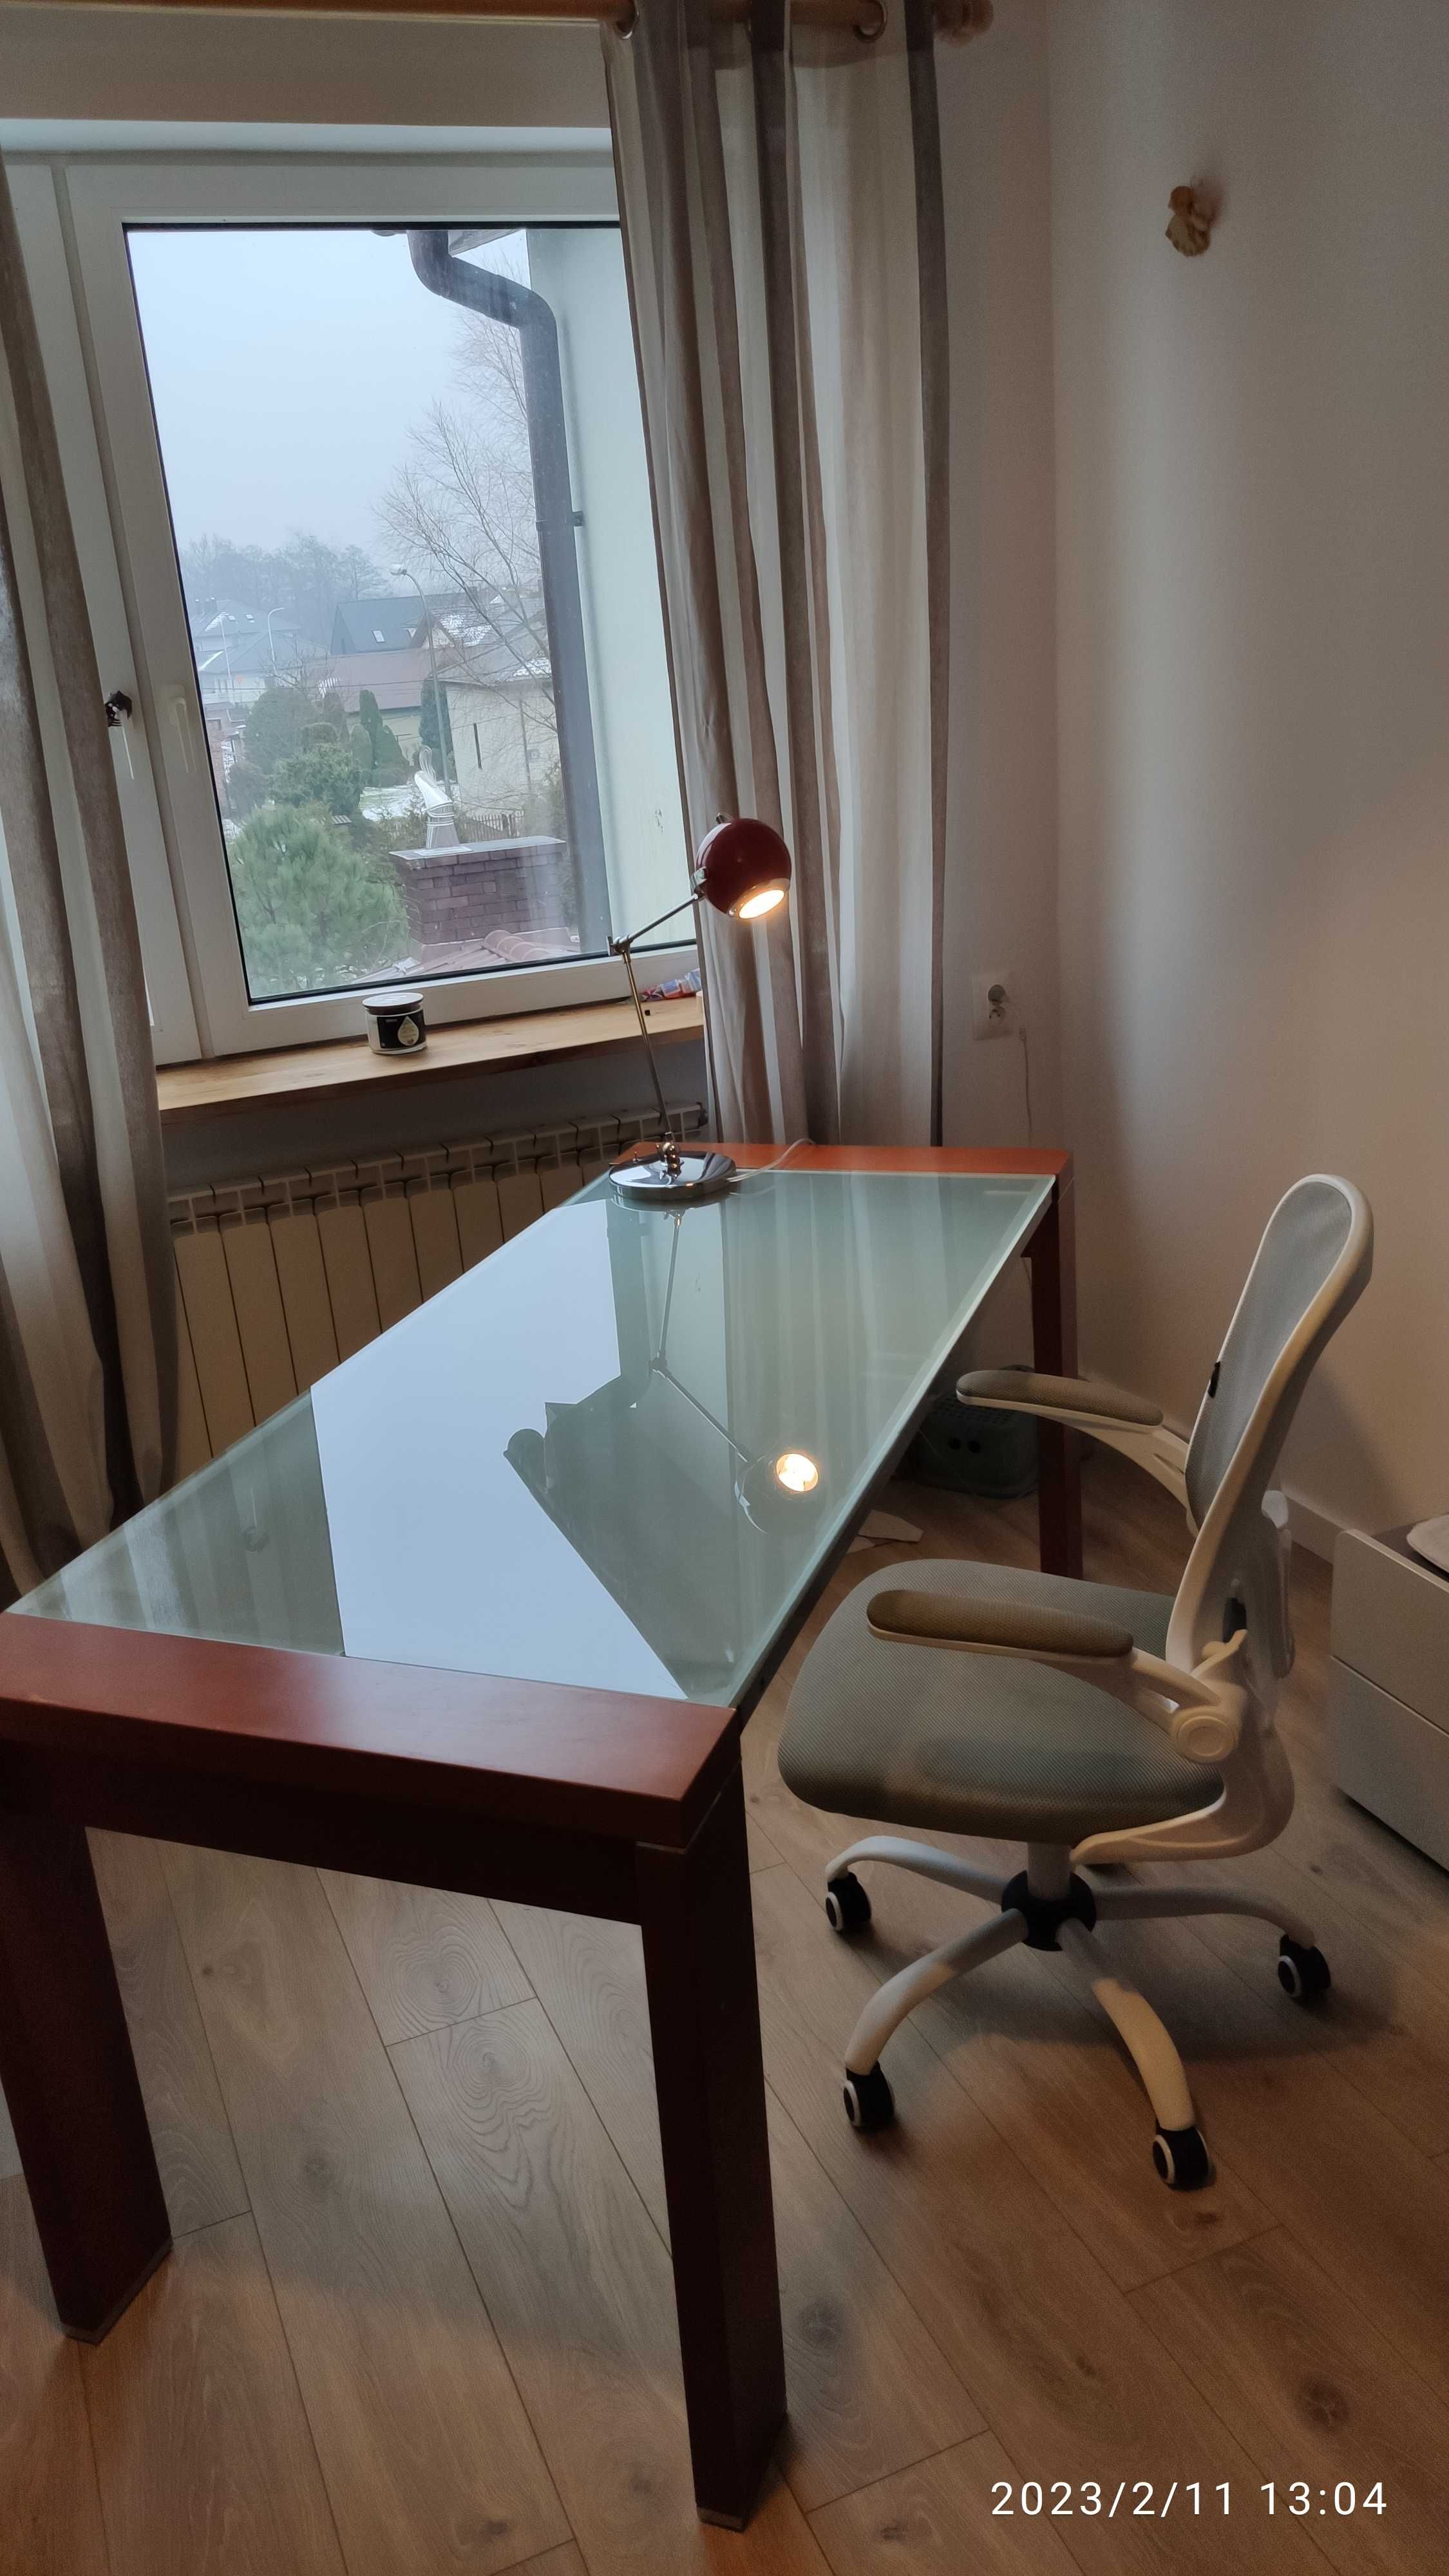 biurko prezesa,konsola, lub stół